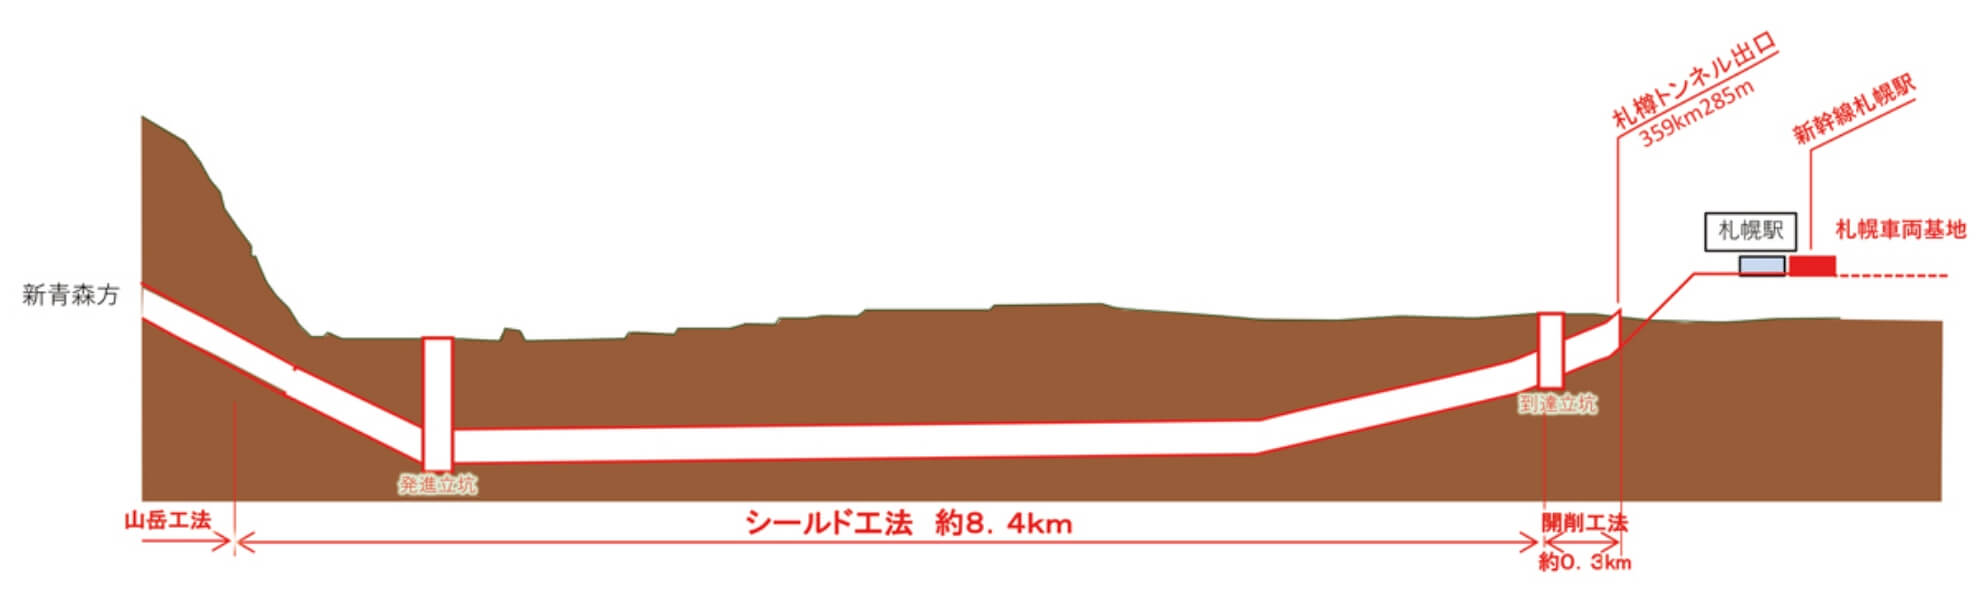 札幌市街地の横断面略図